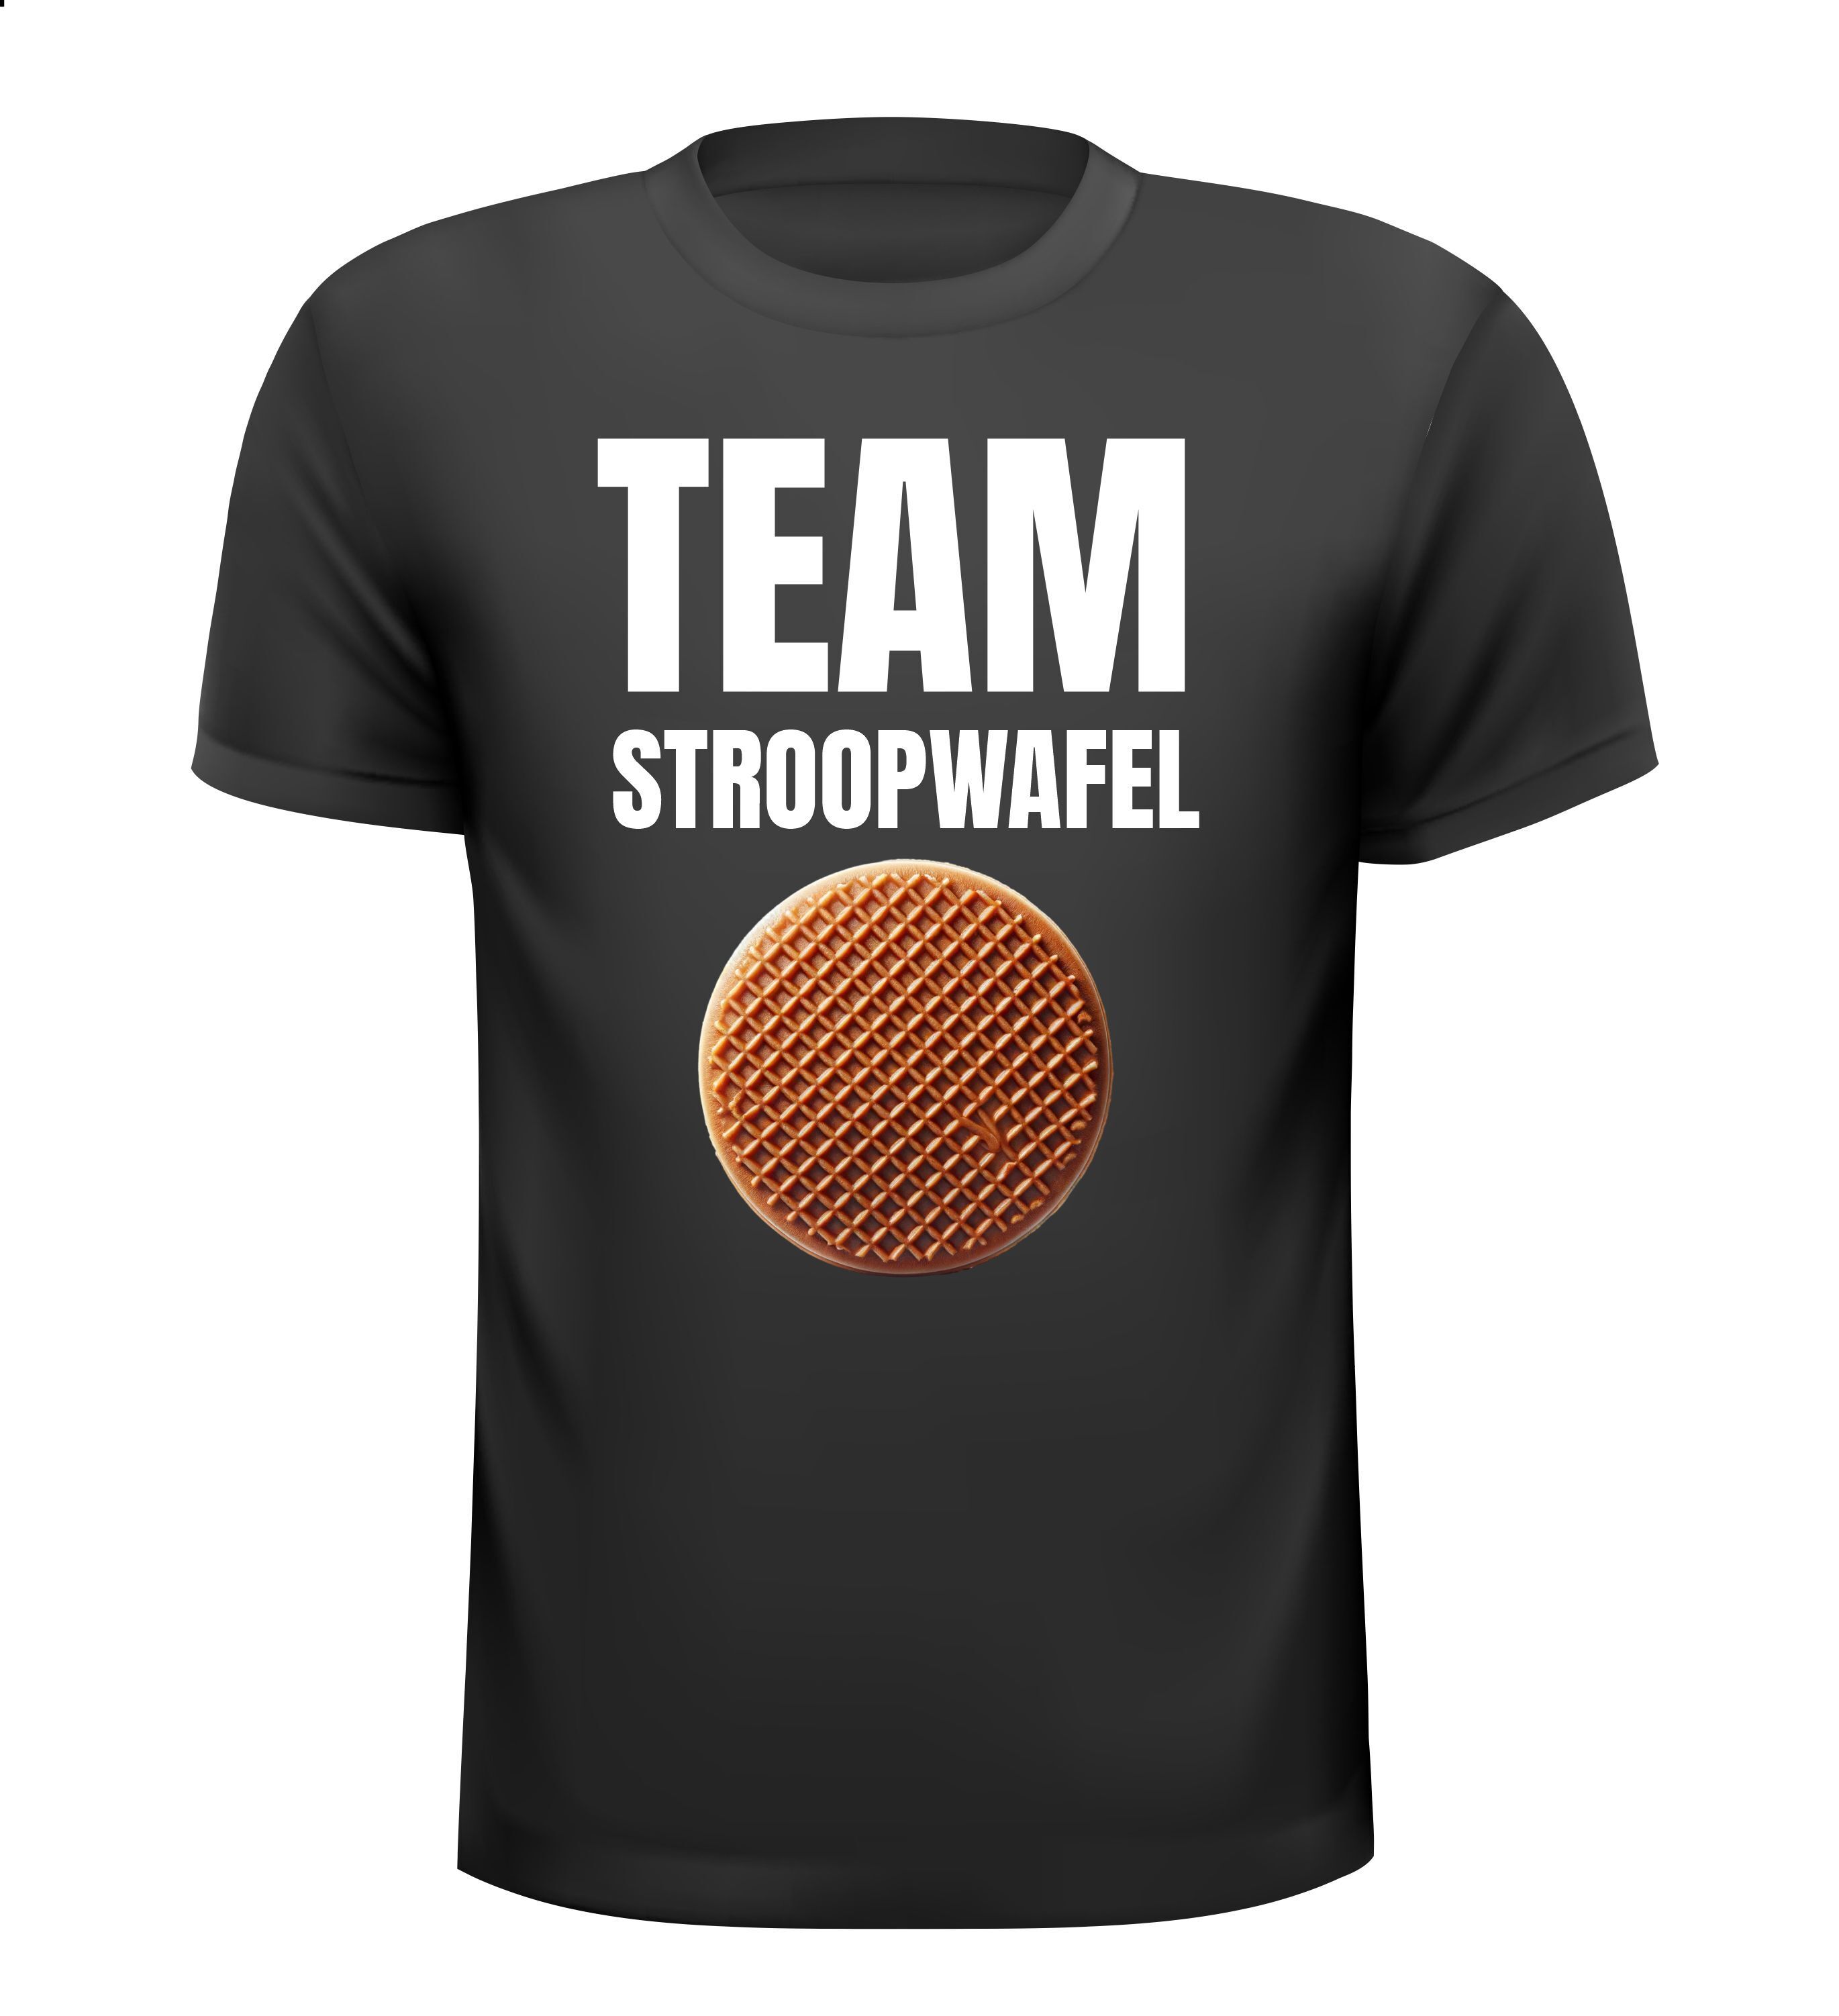 T-shirt voor echte stroopwafel liefhebbers! Team Stroopwafel